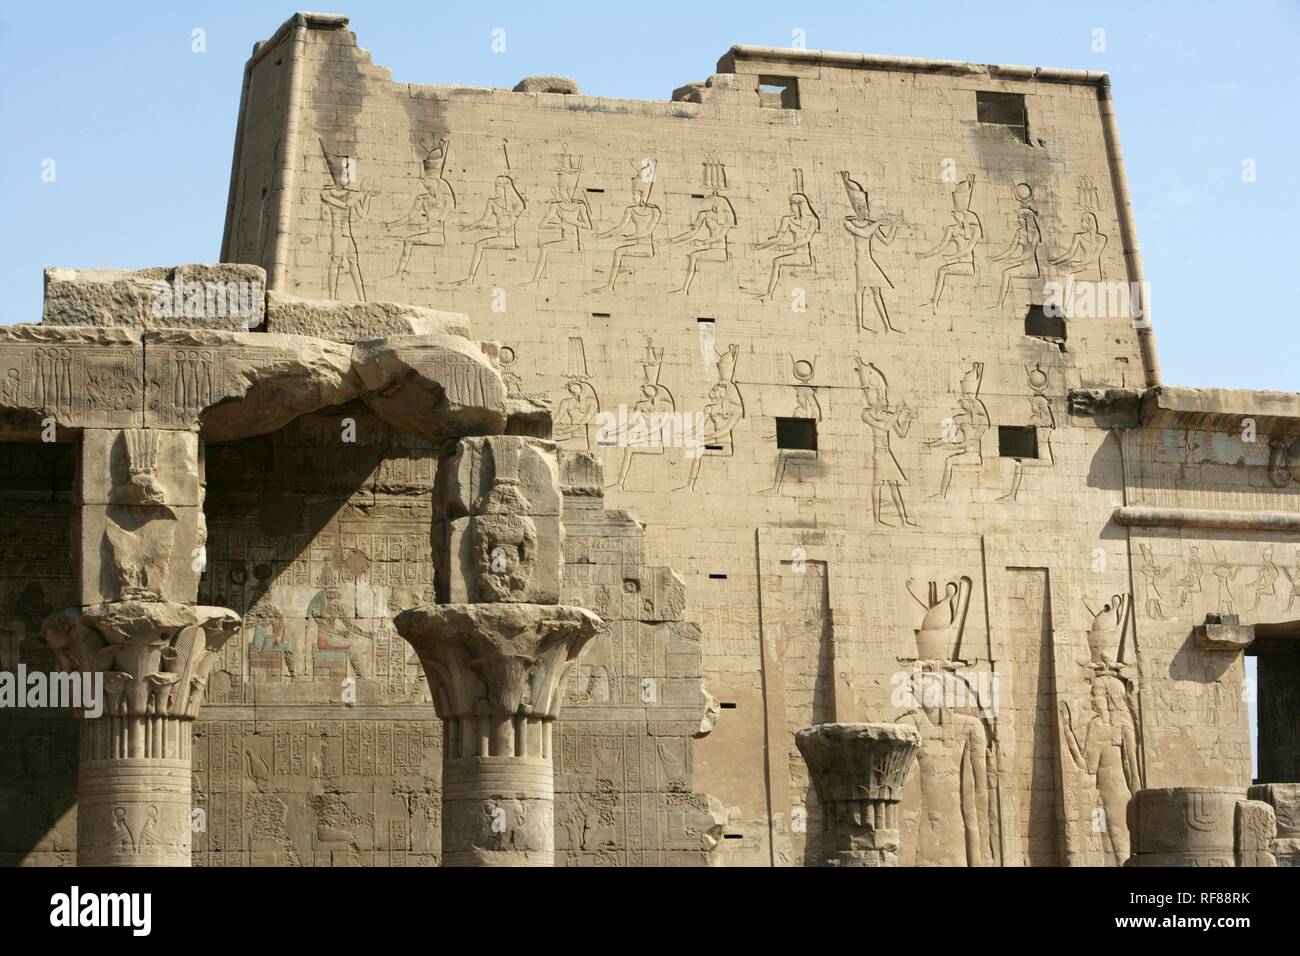 The Temple of Edfu (temple dedicated to the falcon god Horus), Edfu, Egypt, Africa Stock Photo